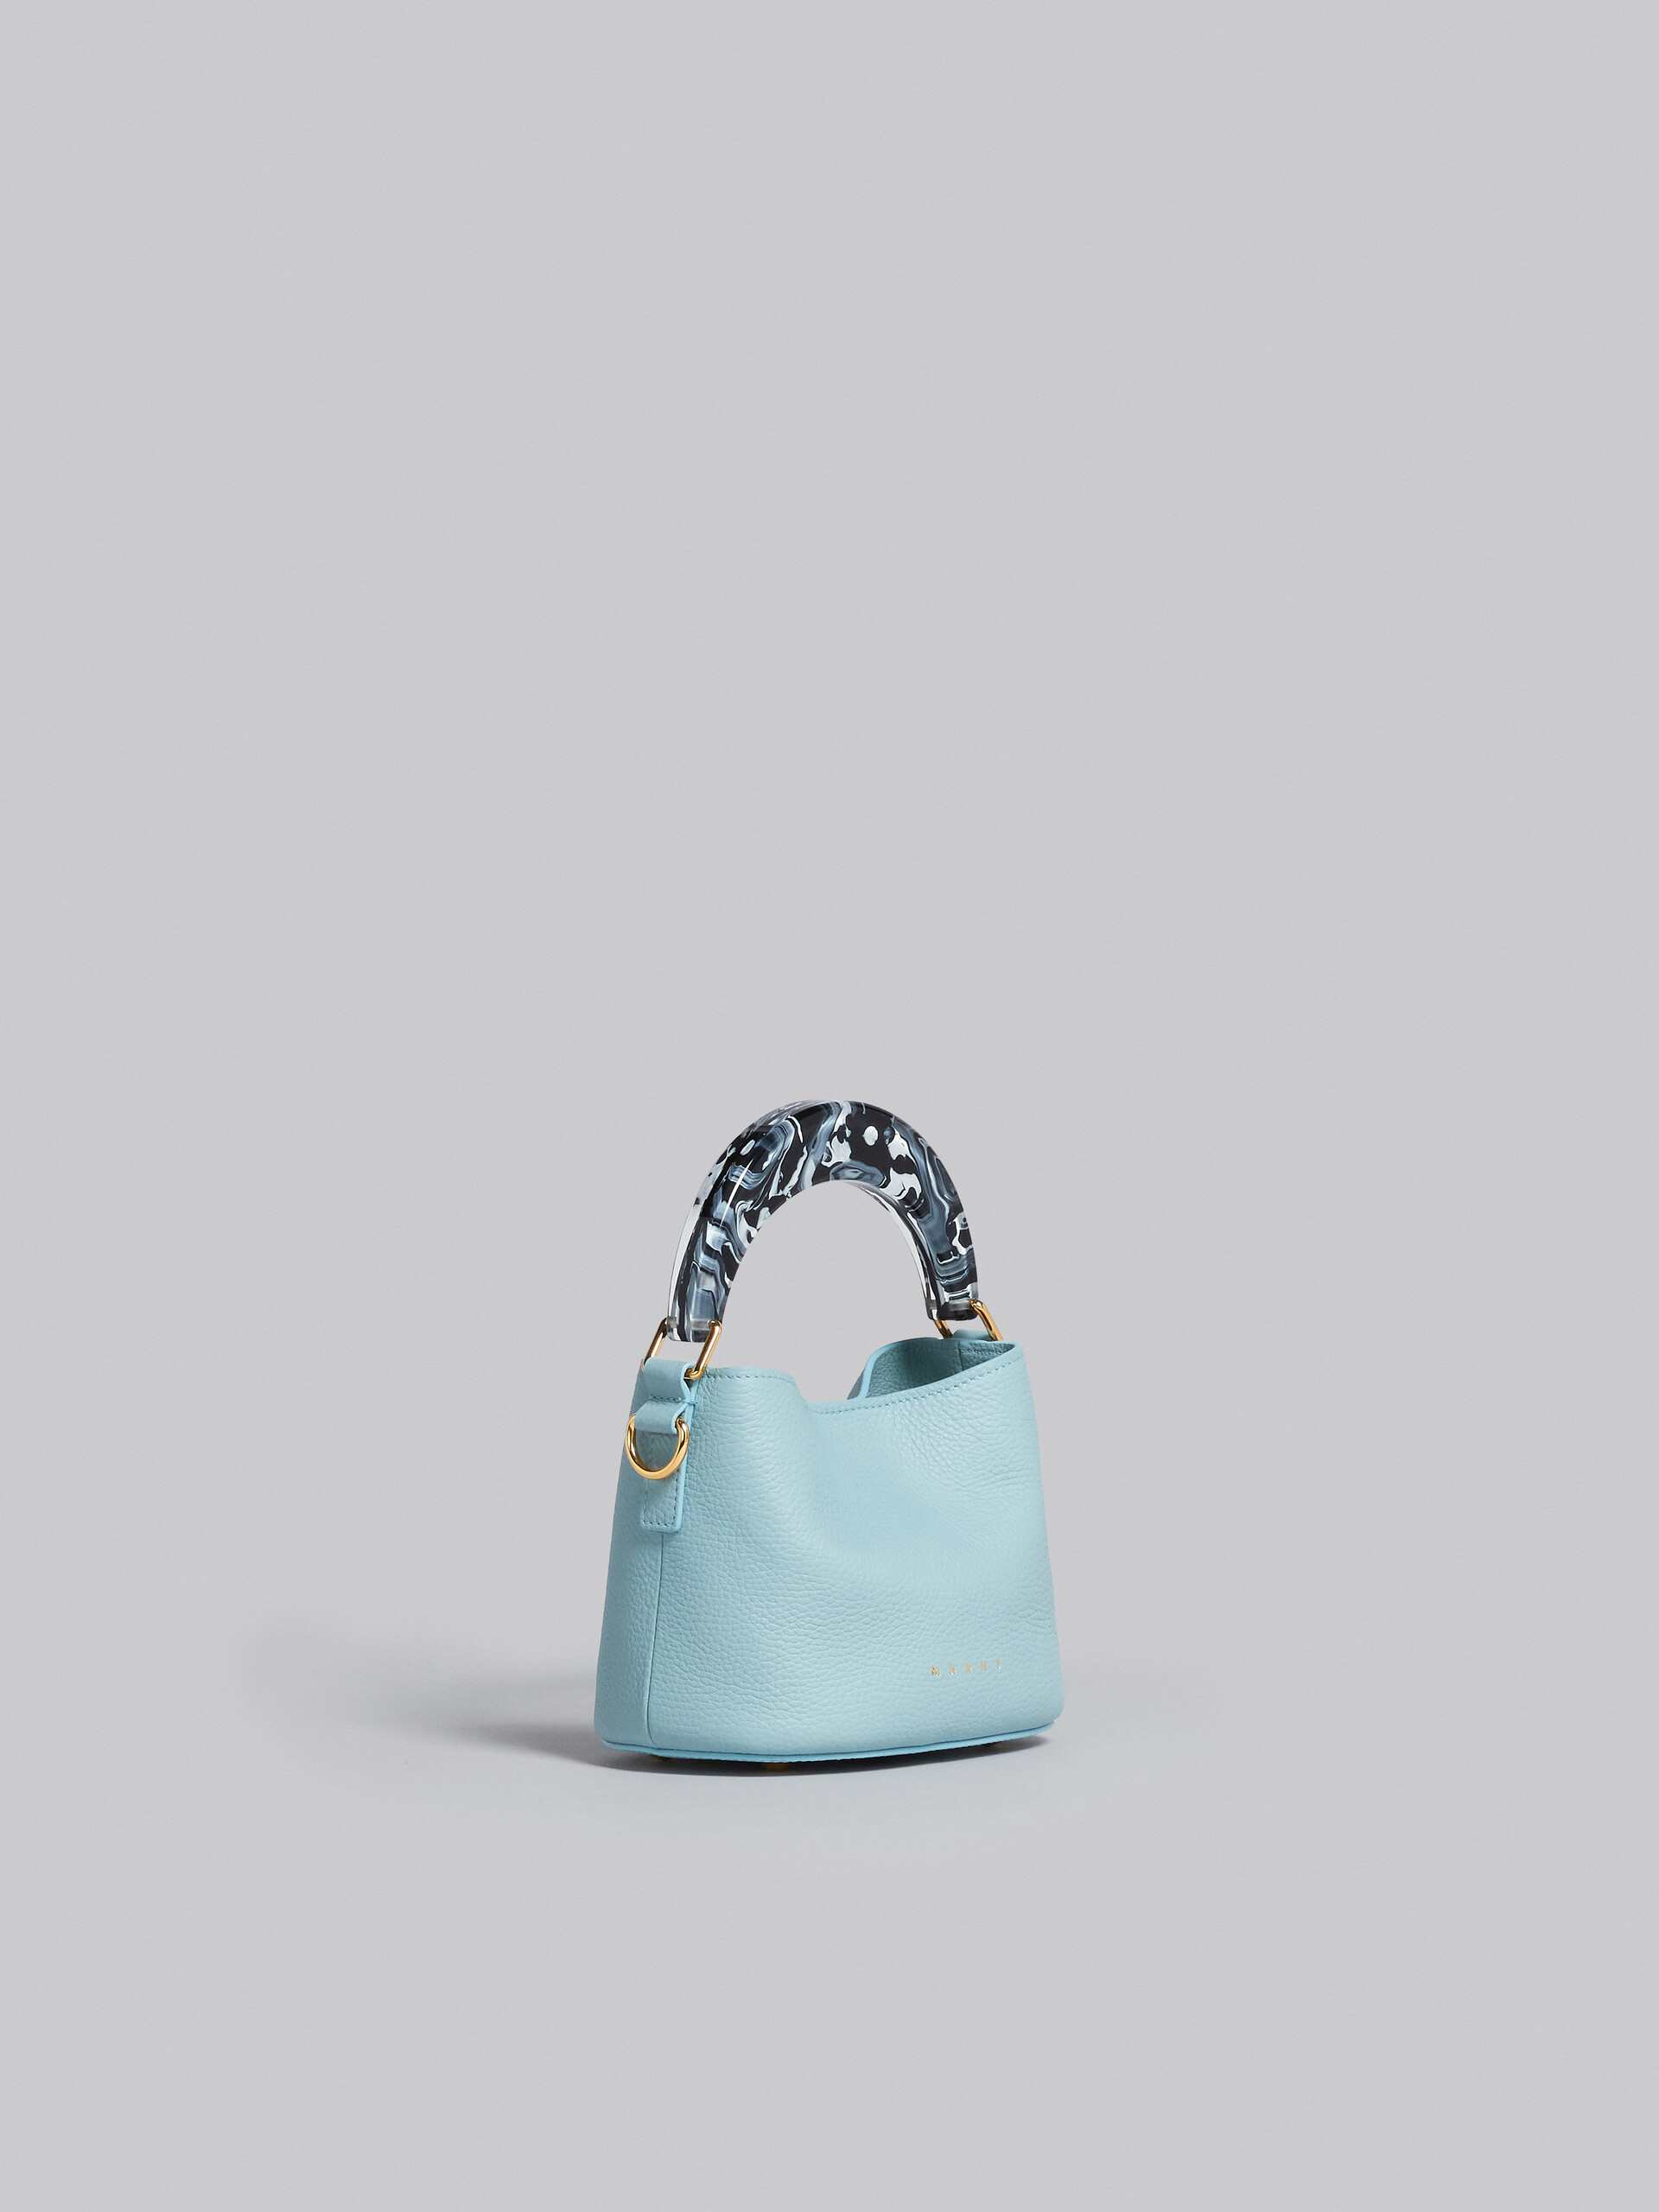 Venice Mini Bucket Bag in light blue leather - Shoulder Bag - Image 6